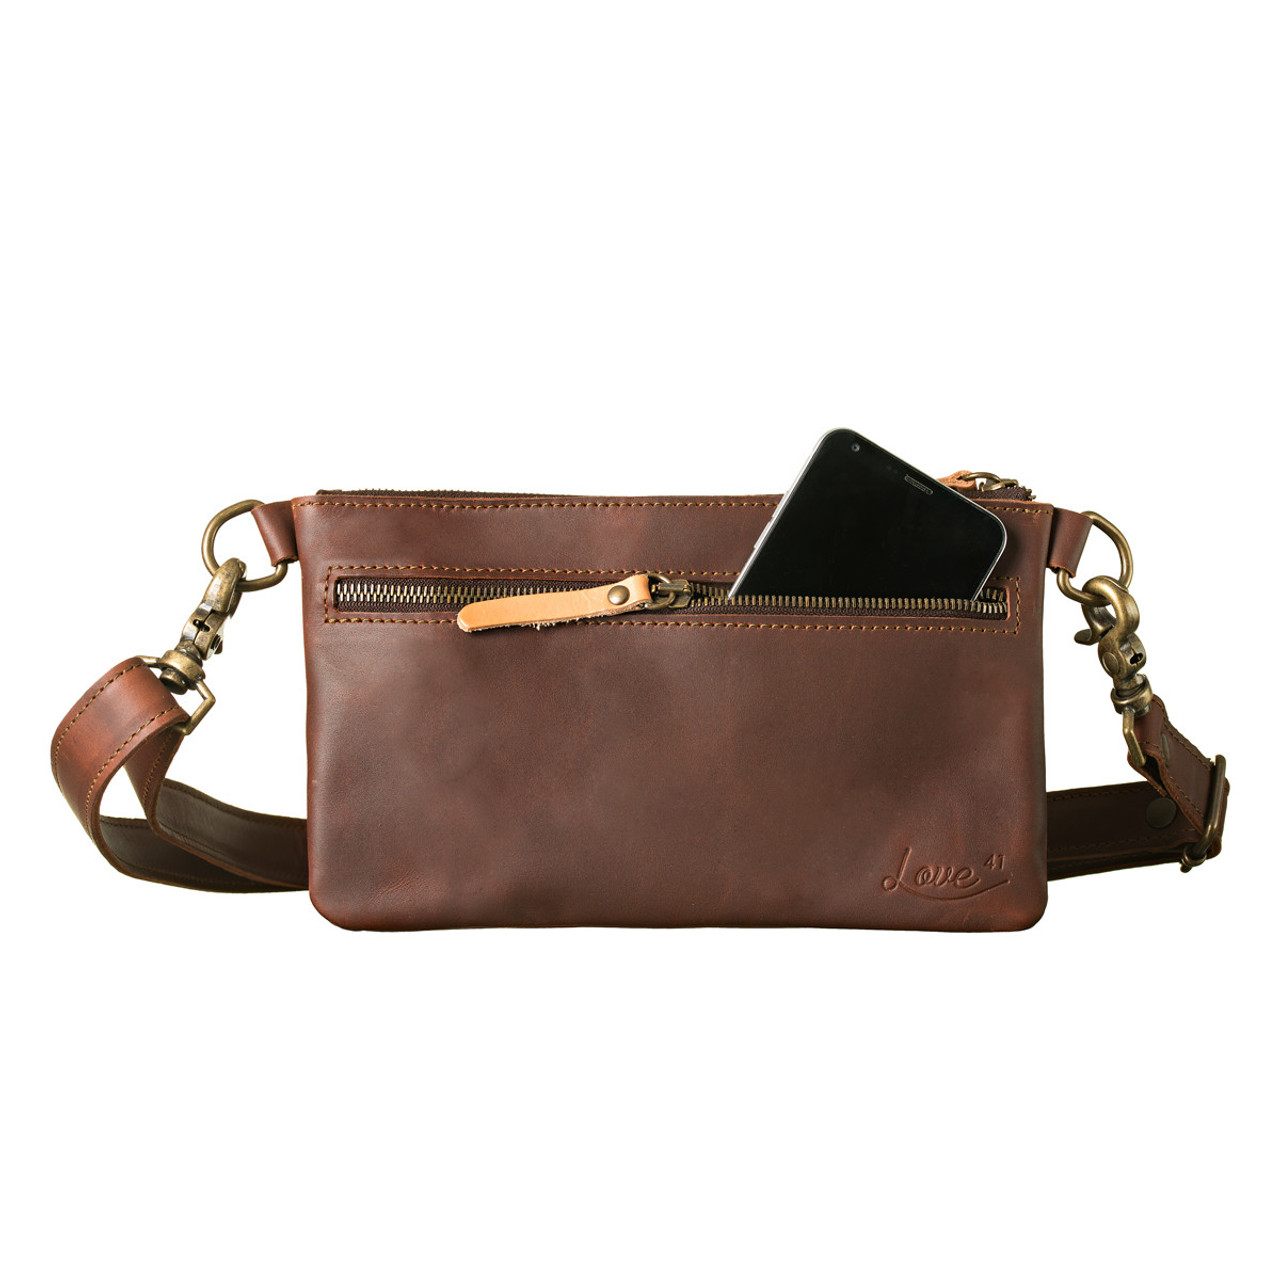 PU Leather Ladies Handbag at Rs 593/piece | पीयू चमड़े का हैंडबैग in New  Delhi | ID: 16693434433